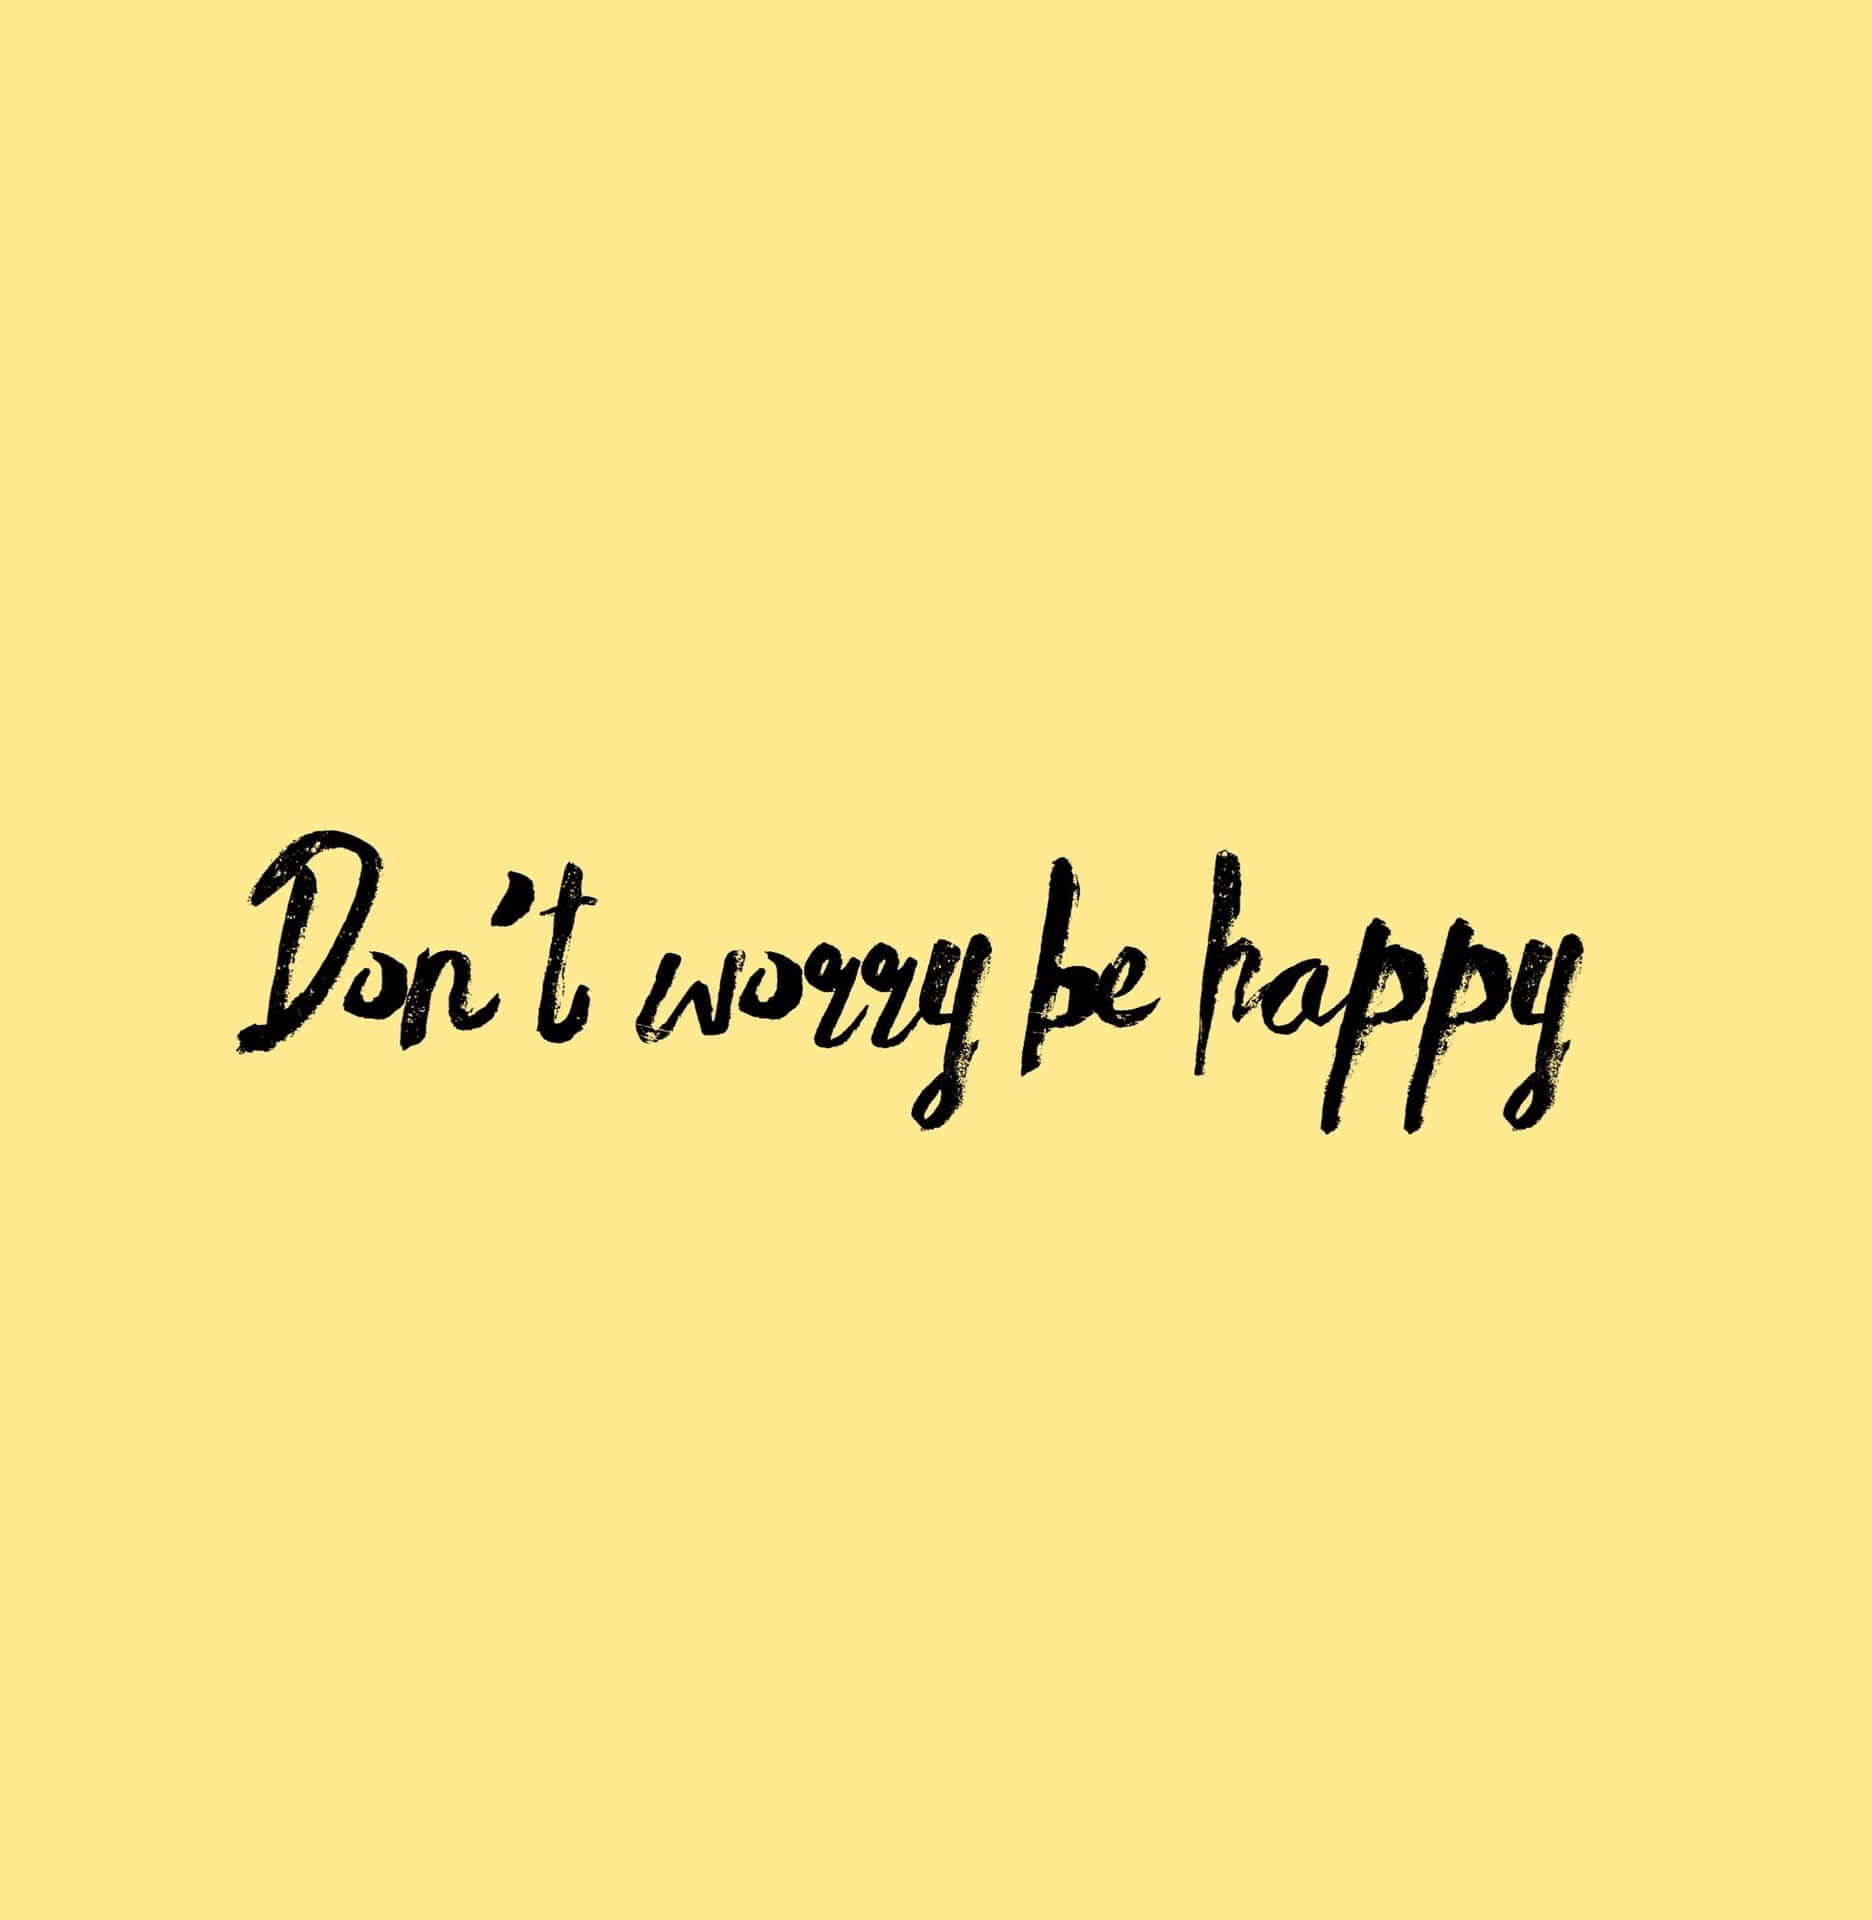 !Vær ikke bekymret, vær glad og nyd livet! Wallpaper